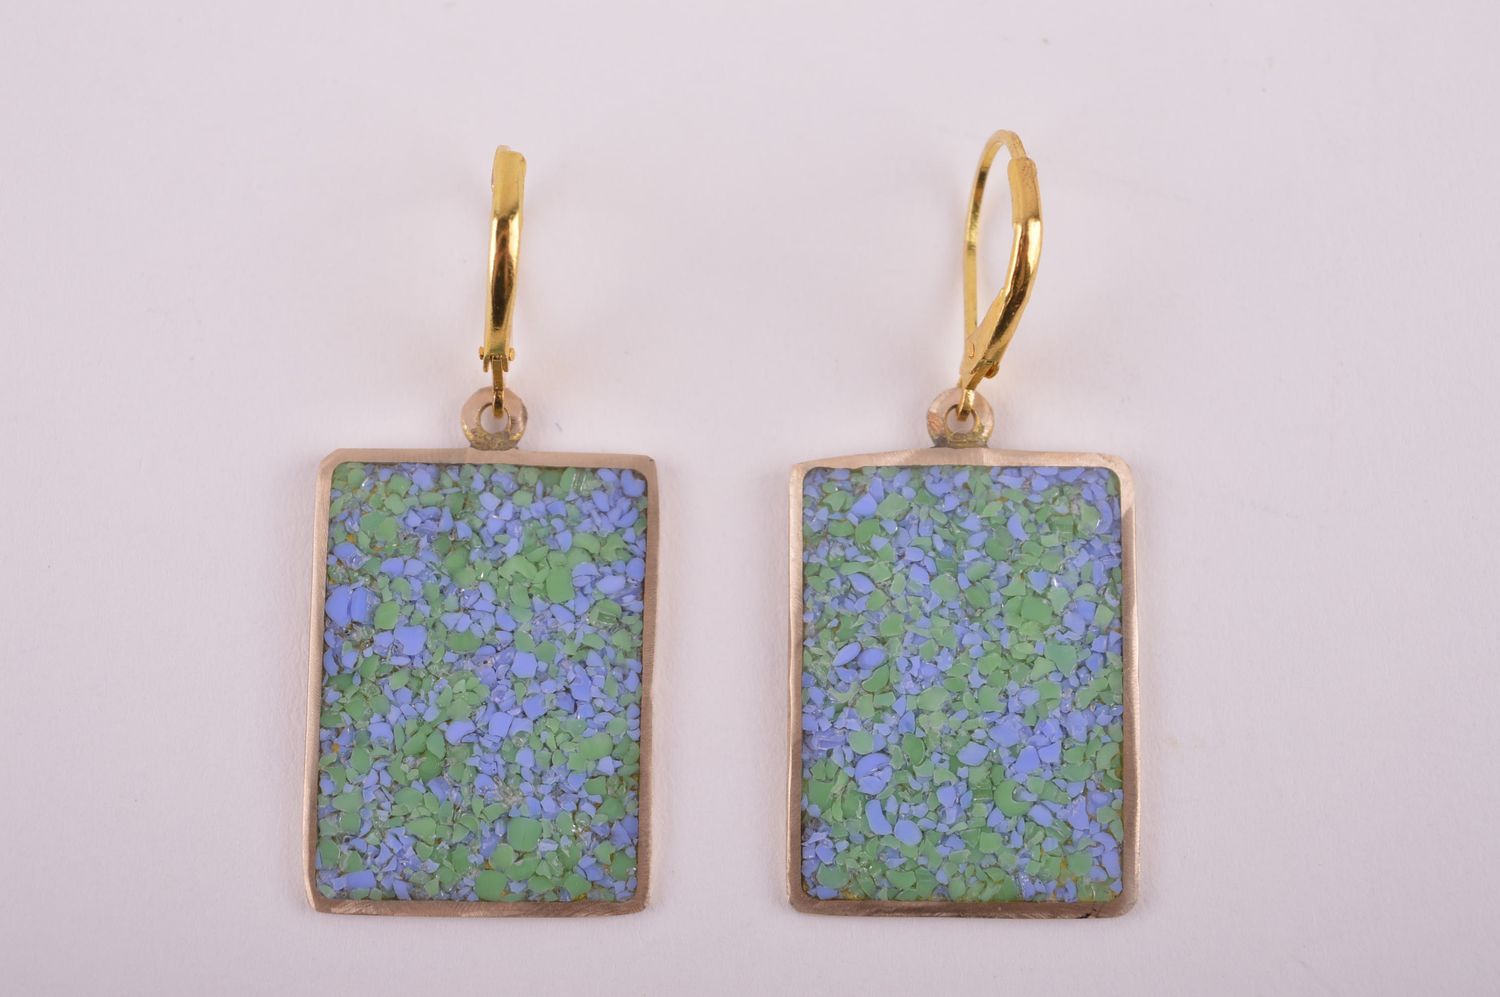 Украшение из латуни handmade серьги из натуральных камней модные серьги голубые фото 4